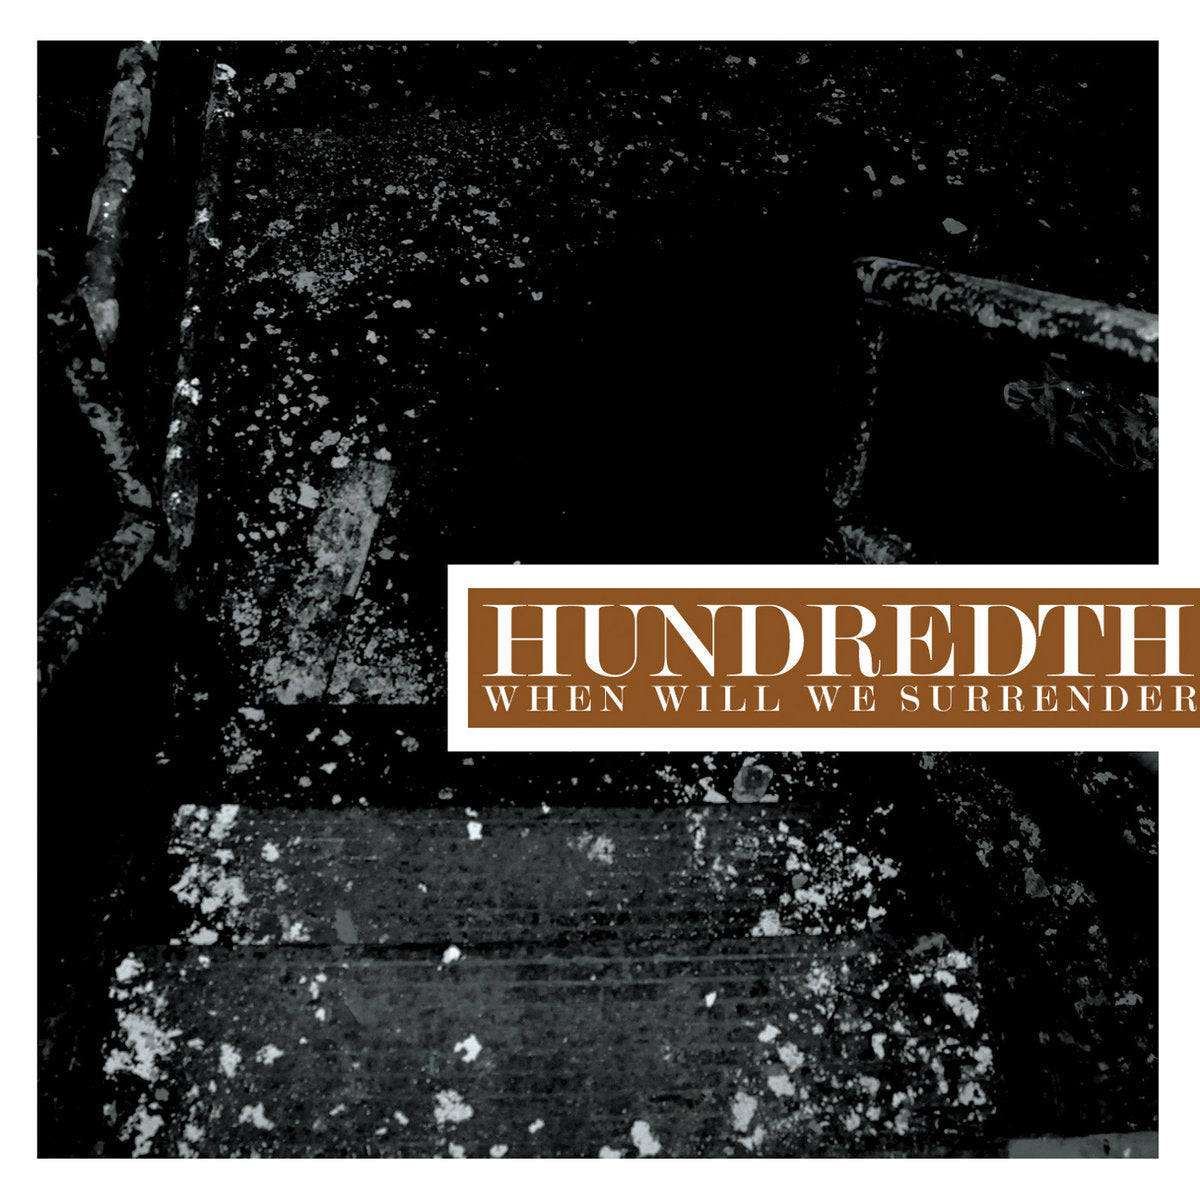 Hundredth "When Will We Surrender" 12" Vinyl